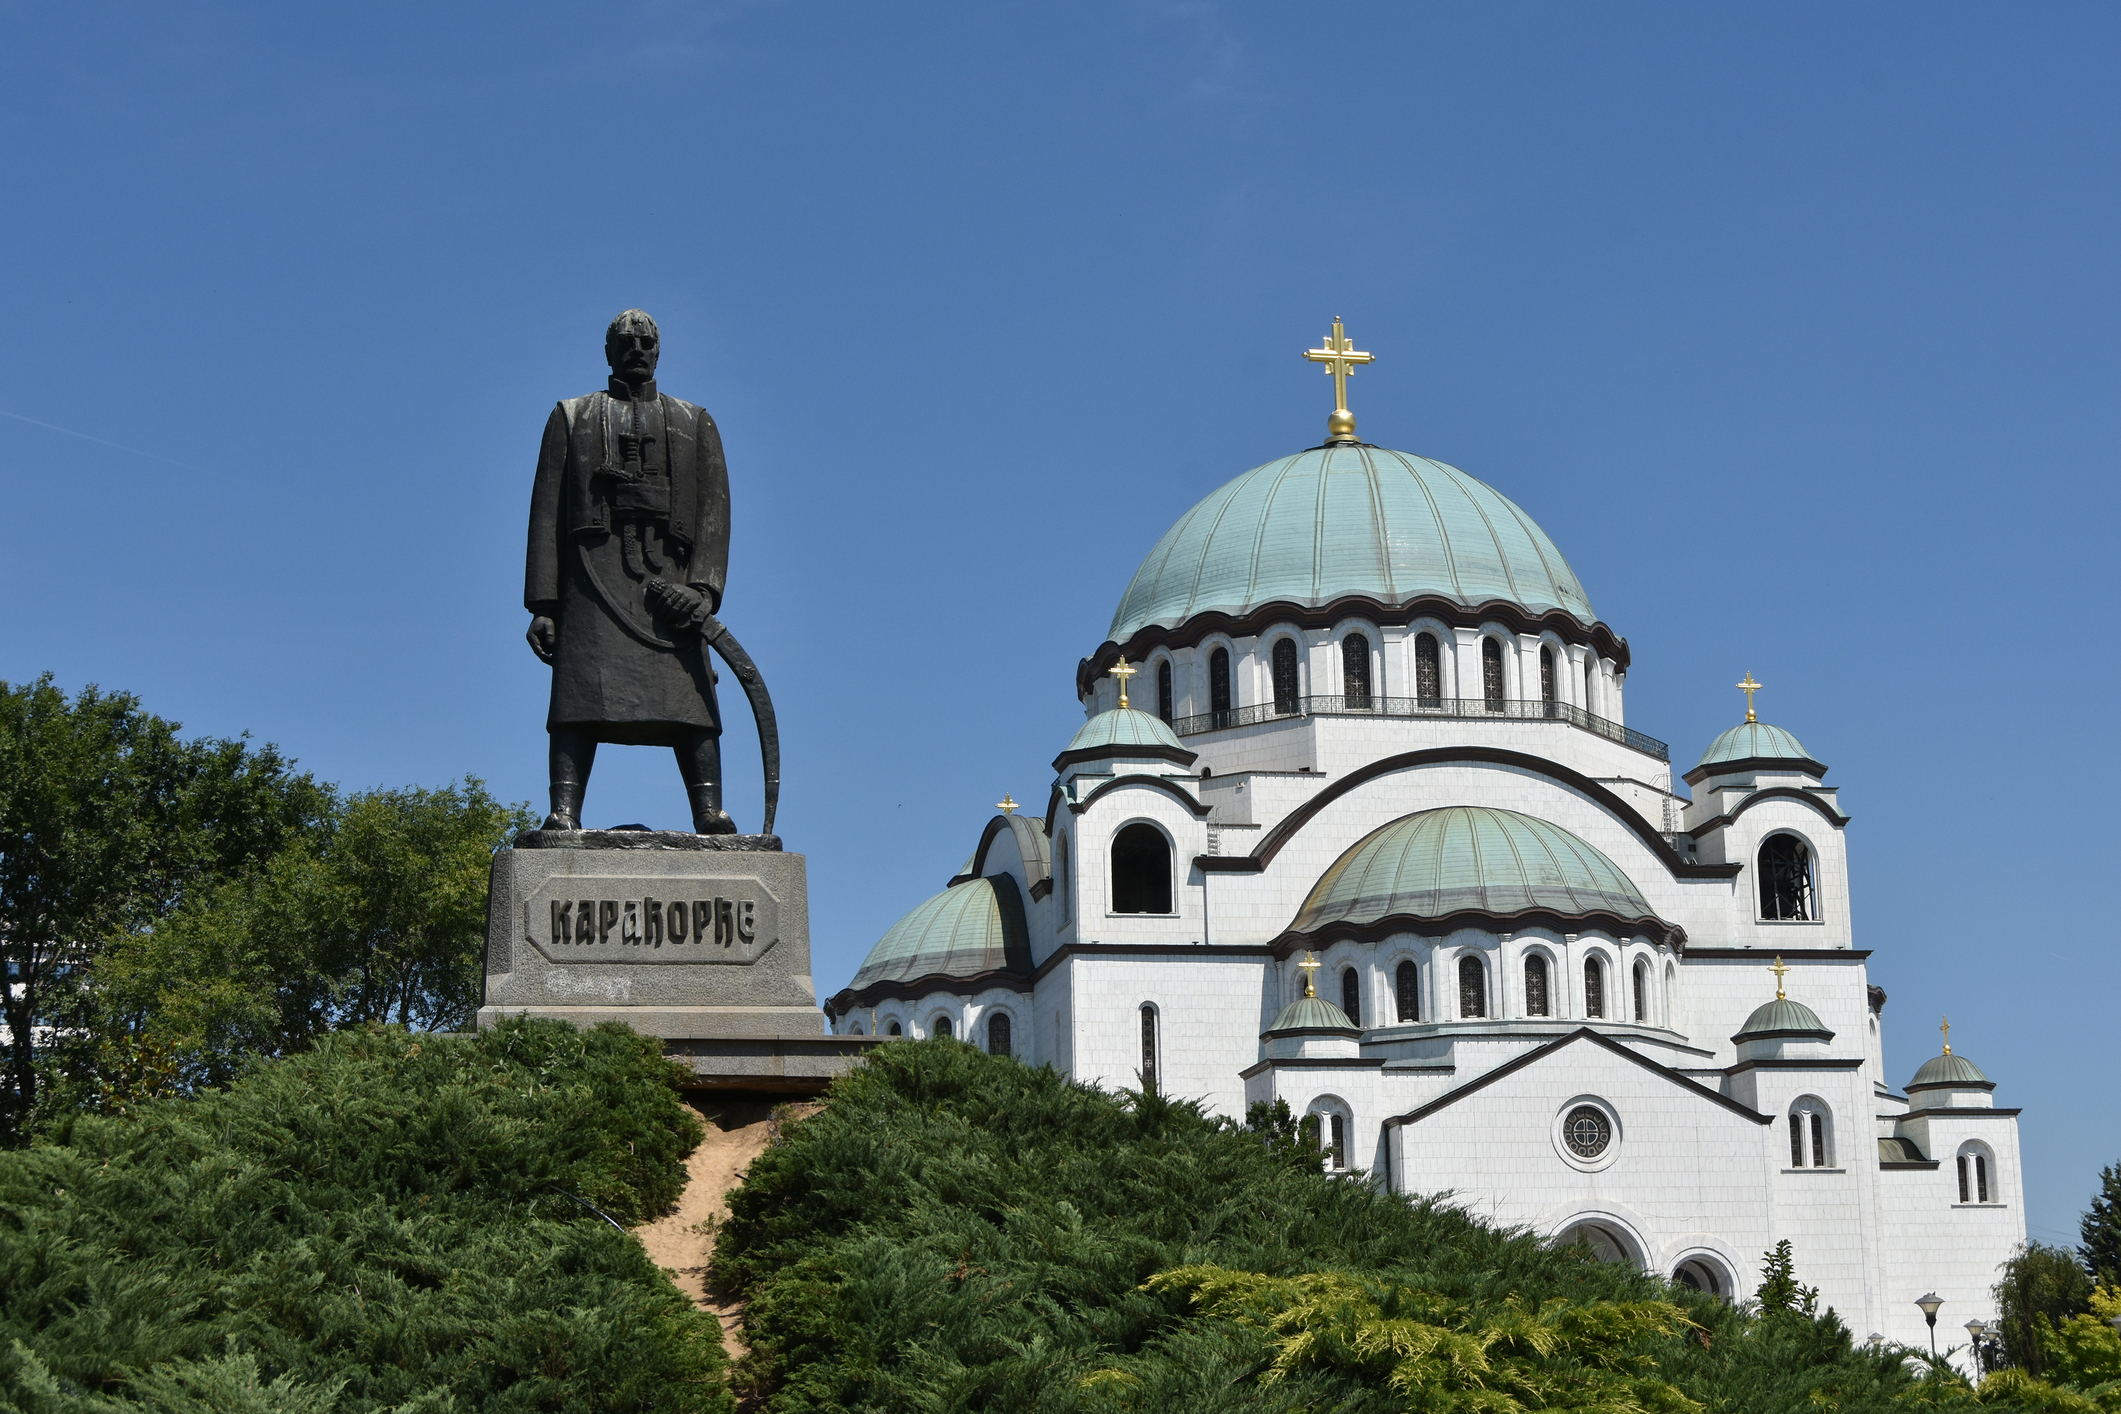 Biserica „Sfântul Sava” este una dintre cele mai mari biserici ortodoxe din lume. Aceasta se află în Belgrad, capitala Serbiei, alături de monumentul lui Karadjordje, conducătorul Primei Răscoale Sârbe împotriva dominației otomane și fondatorul dinastiei Karagheorghevic (sursă foto: Dreamstime)